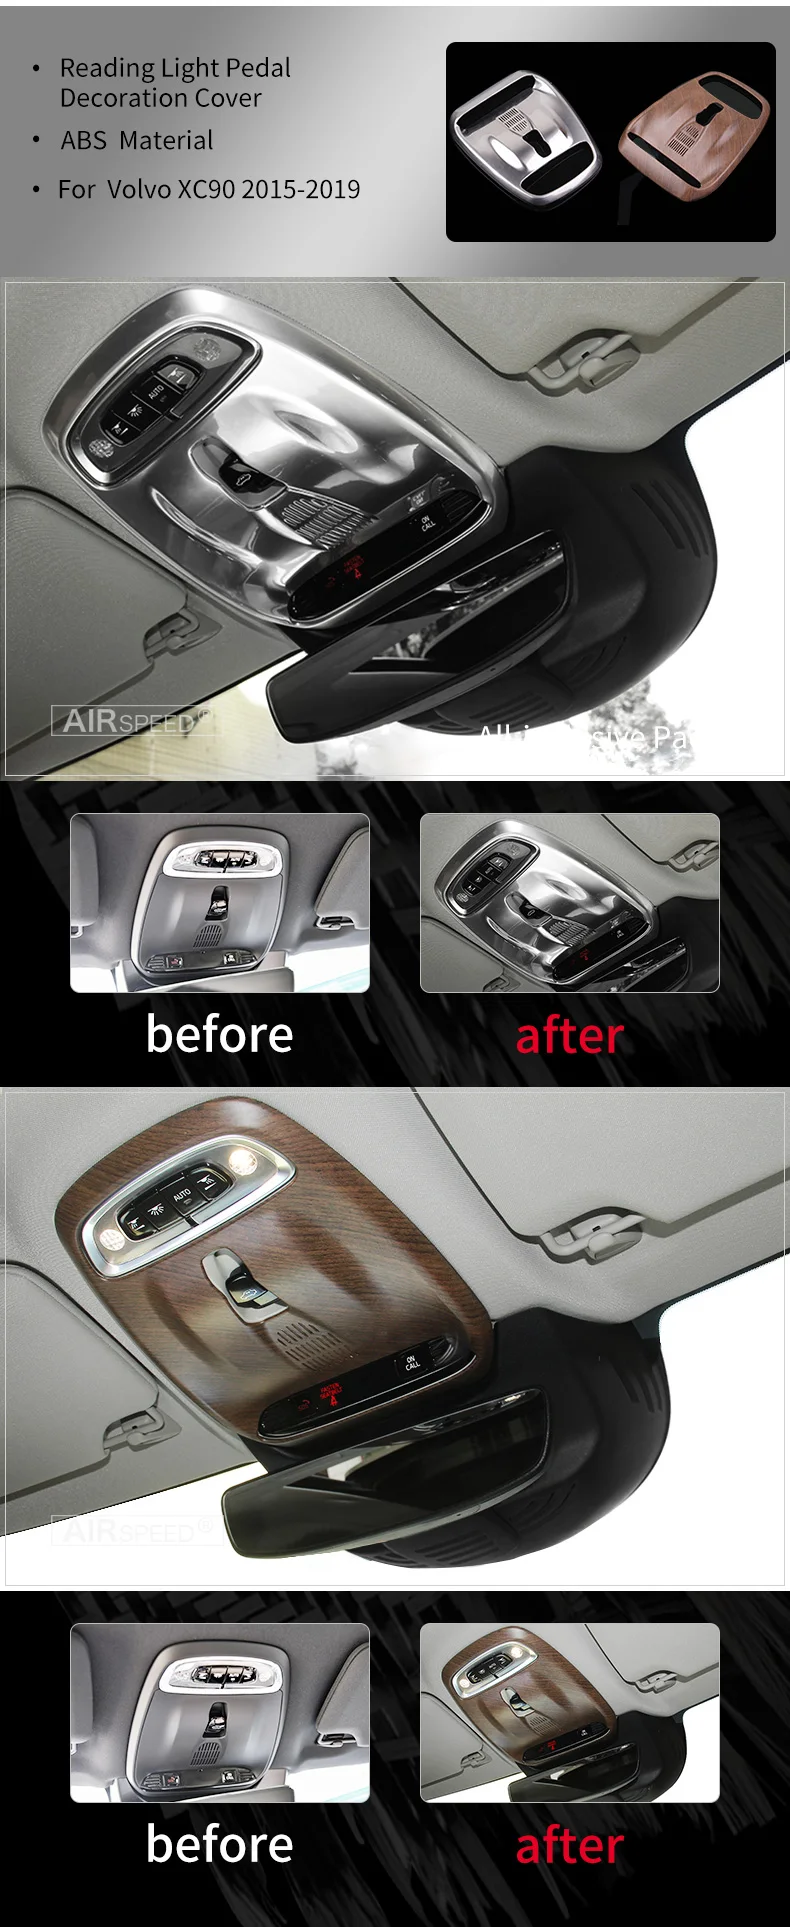 AIRSPEED хром ABS нержавеющая сталь для VOLVO XC90 аксессуары автомобиля кузова порога украшения стикер